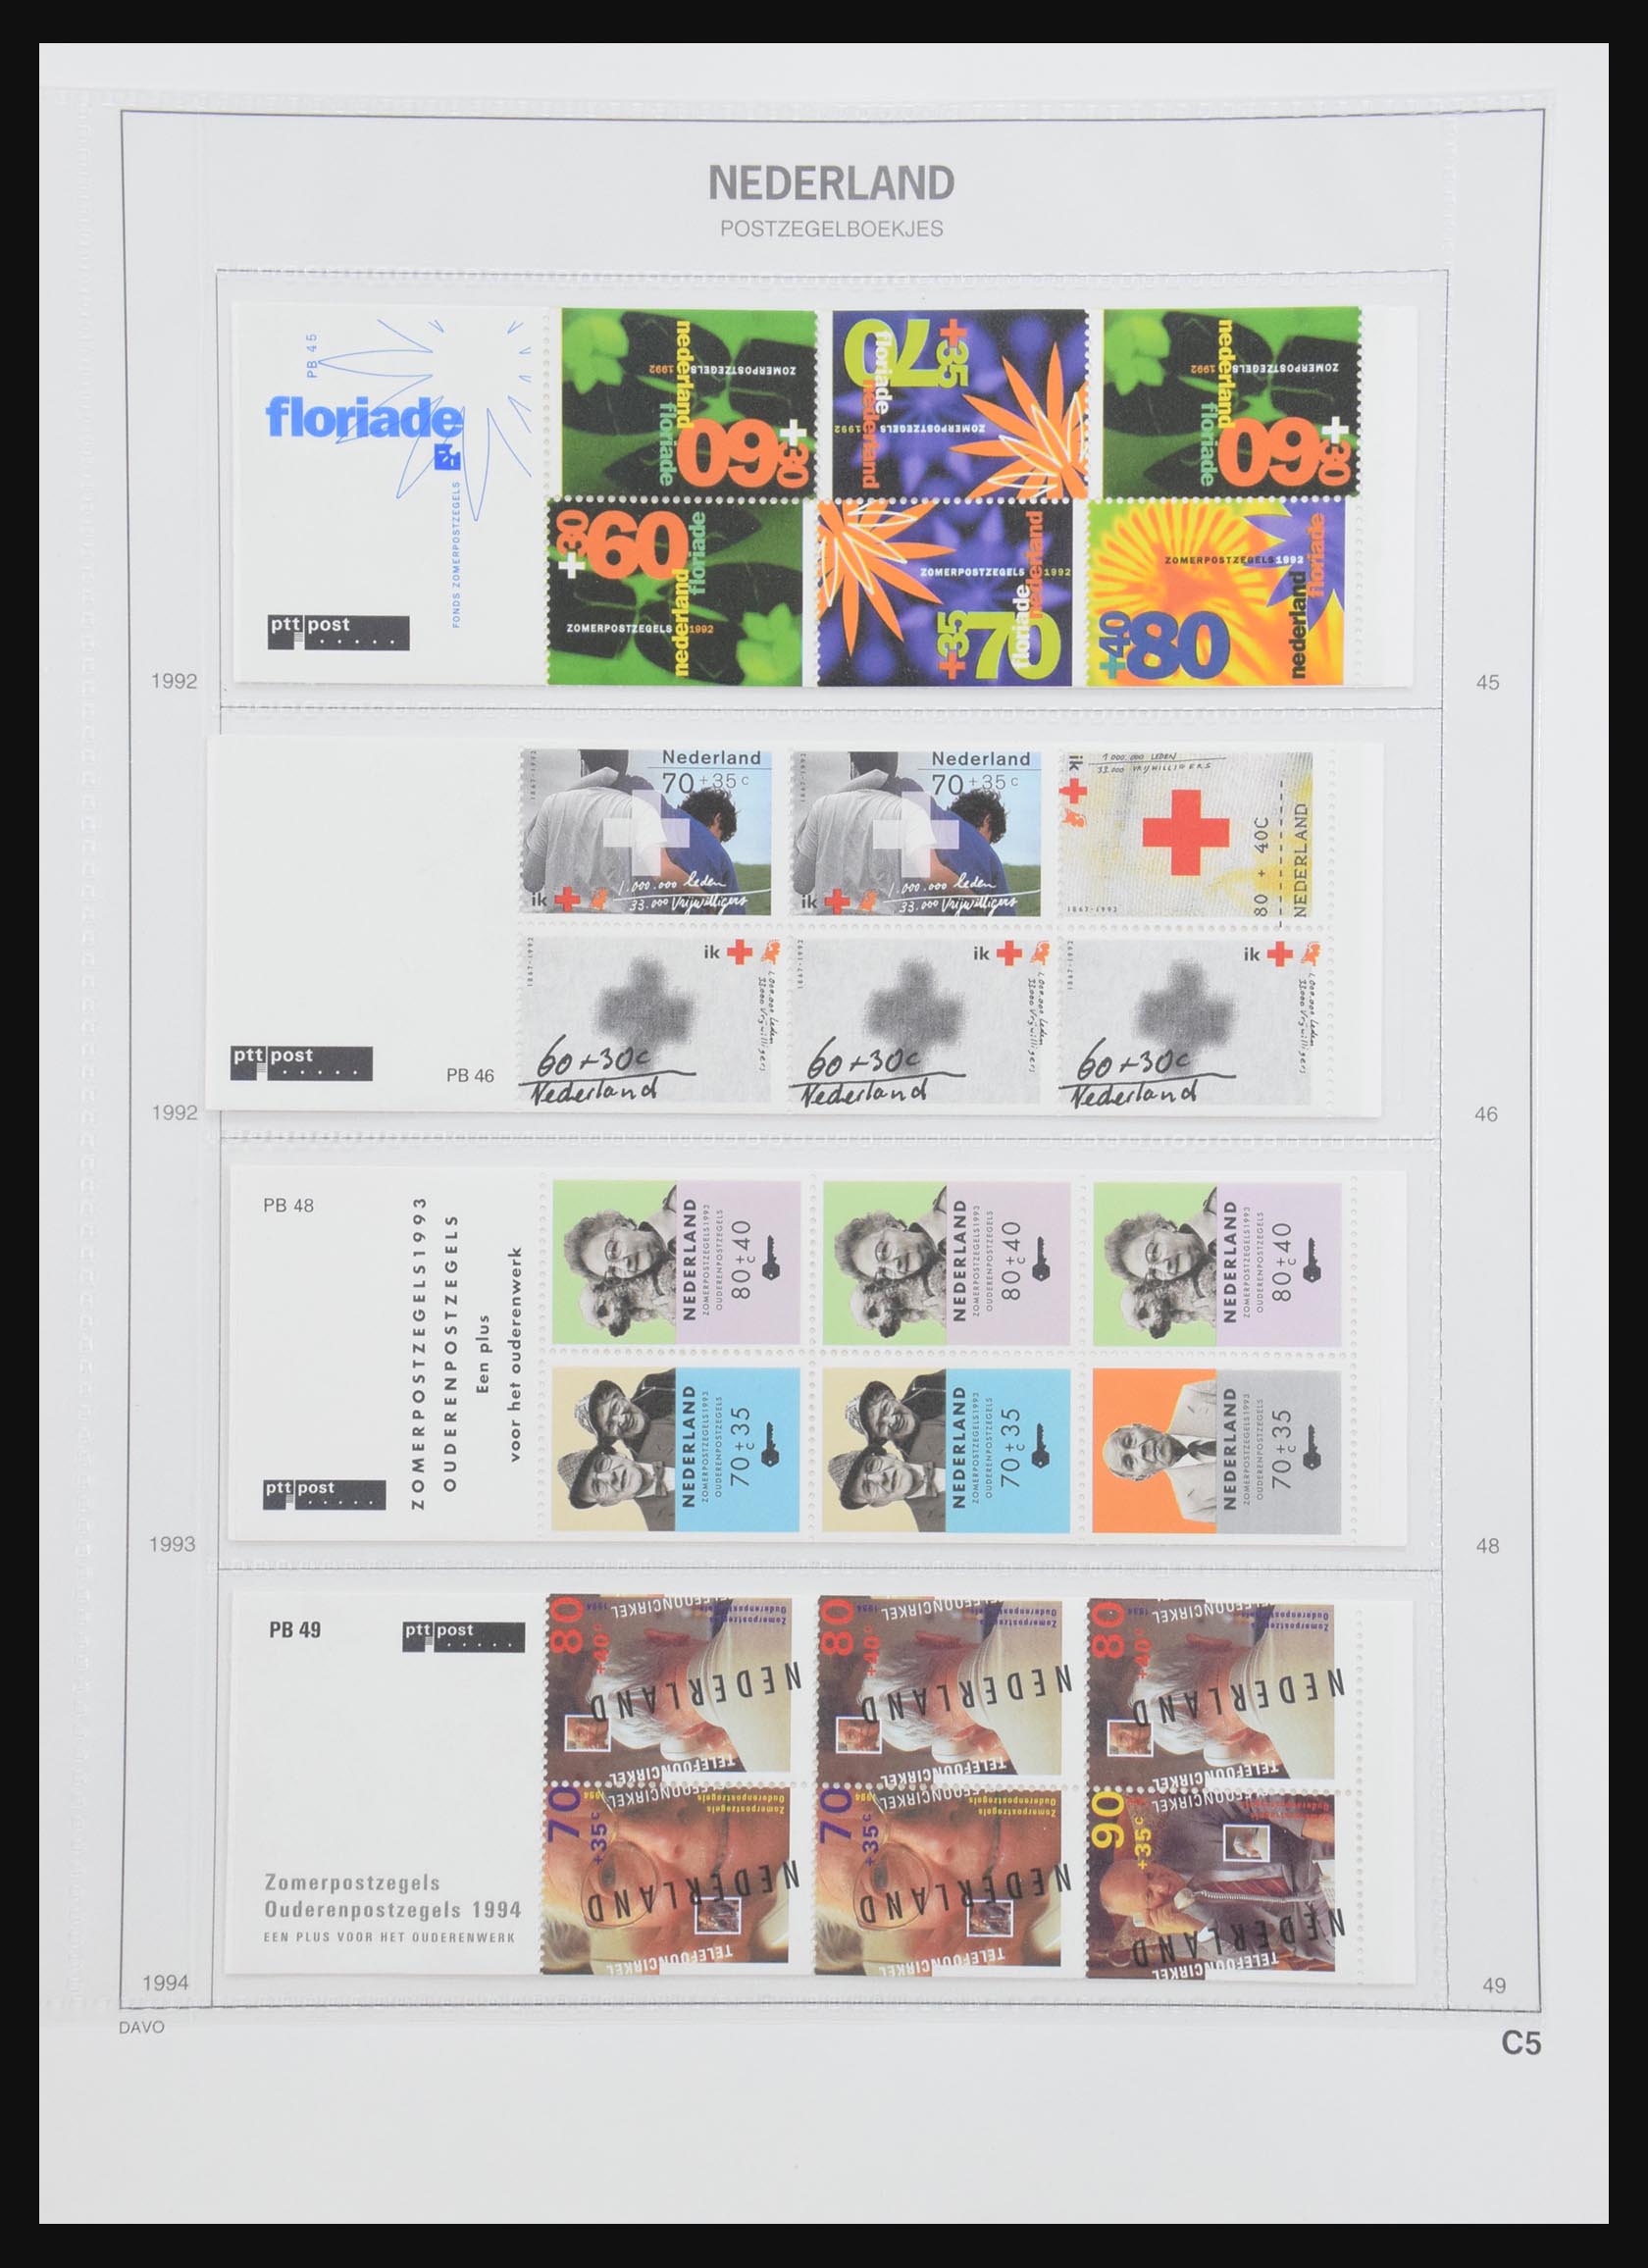 31159 027 - 31159 Nederland postzegelboekjes 1964-1994.